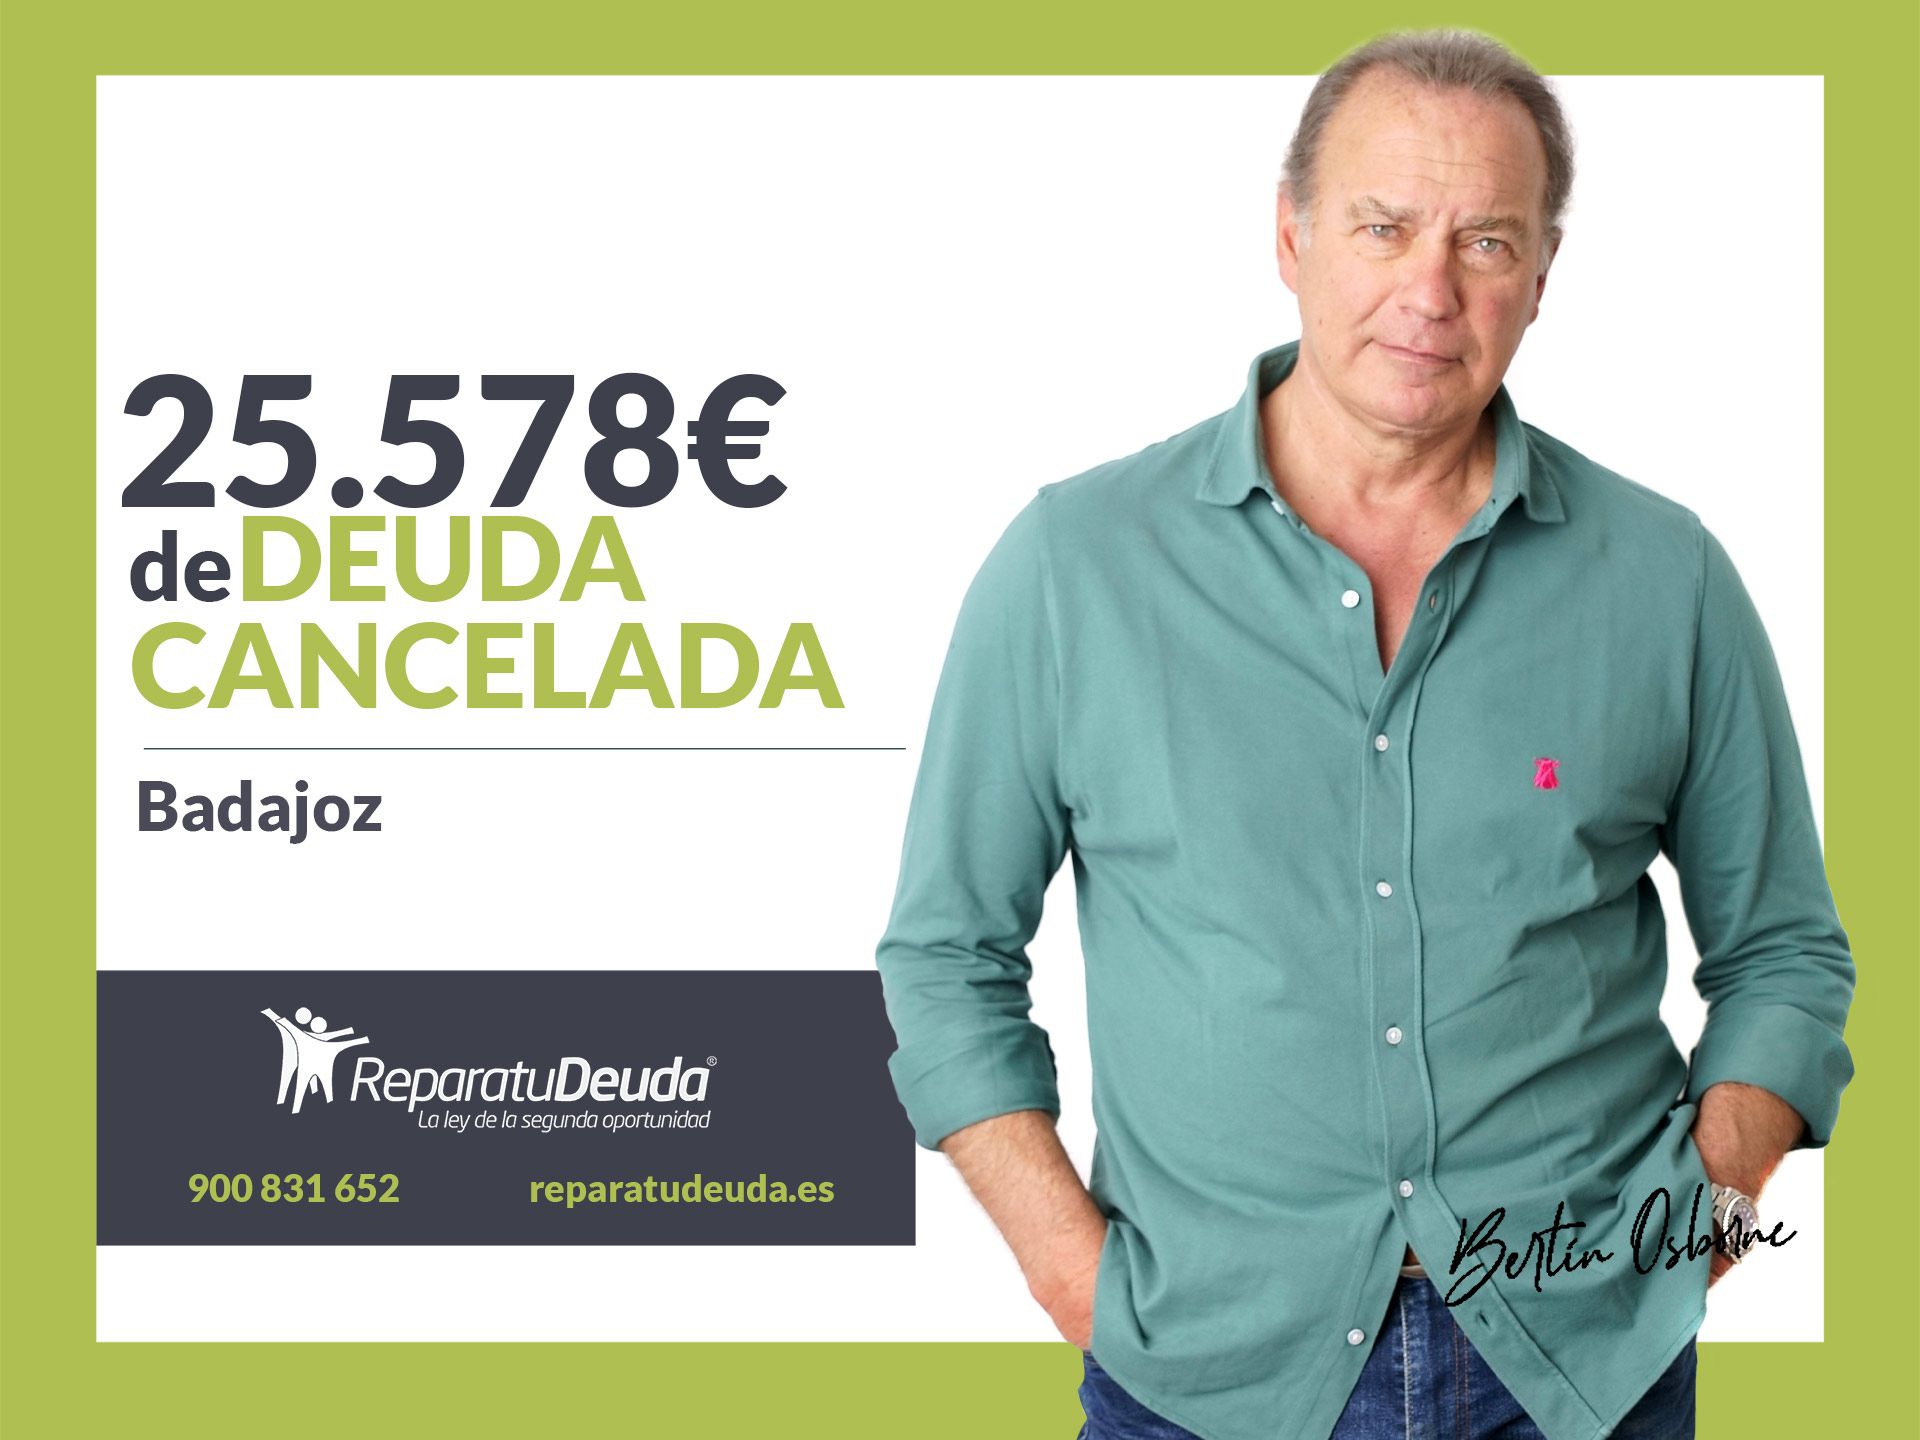 Repara tu Deuda Abogados cancela 25.578? en Badajoz (Extremadura) gracias a la Ley de Segunda Oportunidad